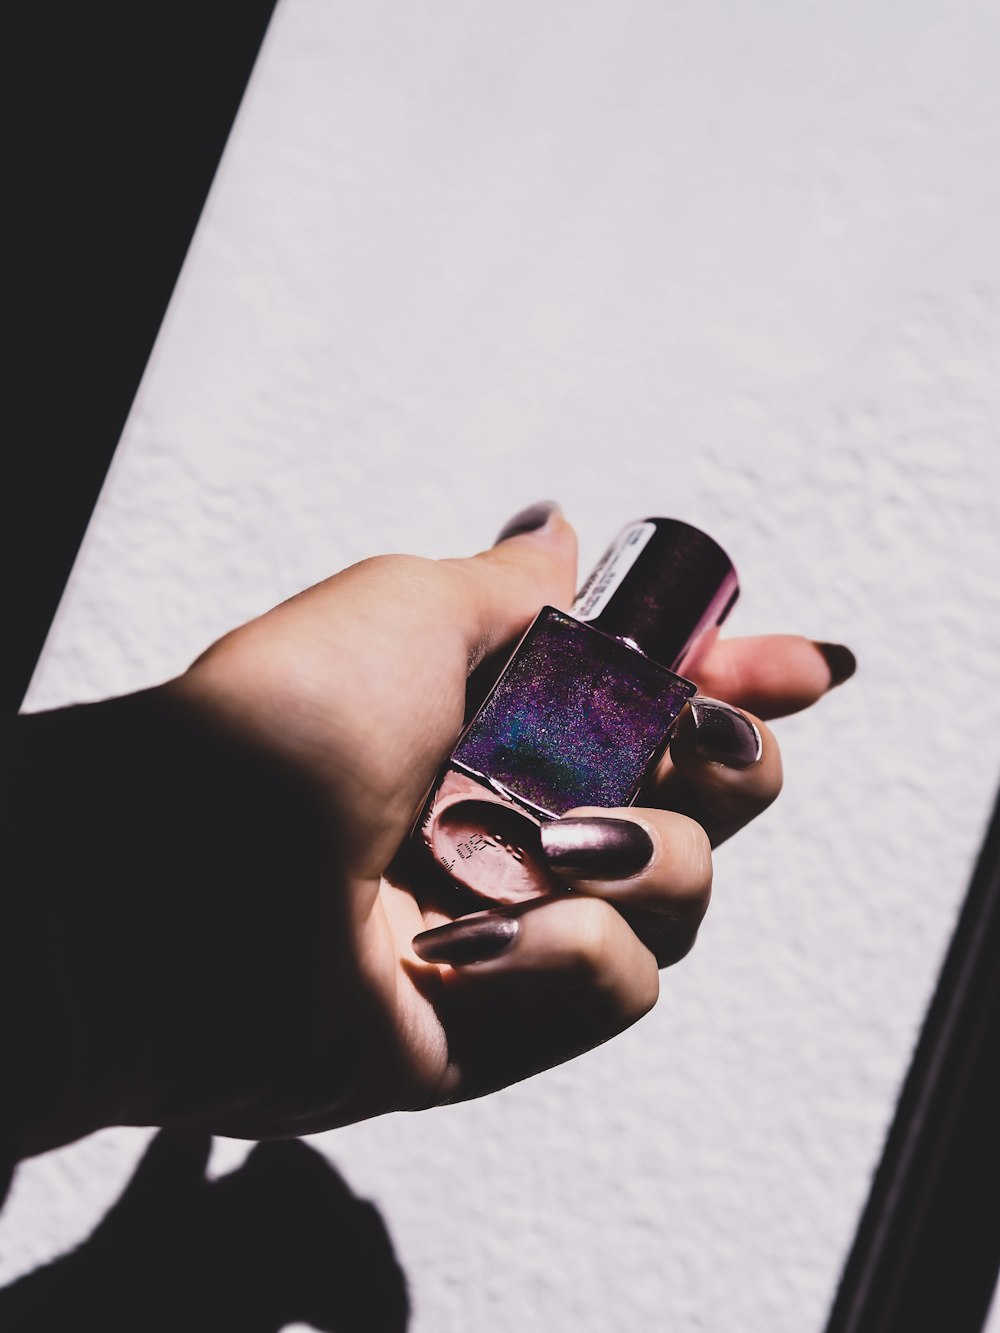 Esmalte de uñas púrpura en la mano de las personas